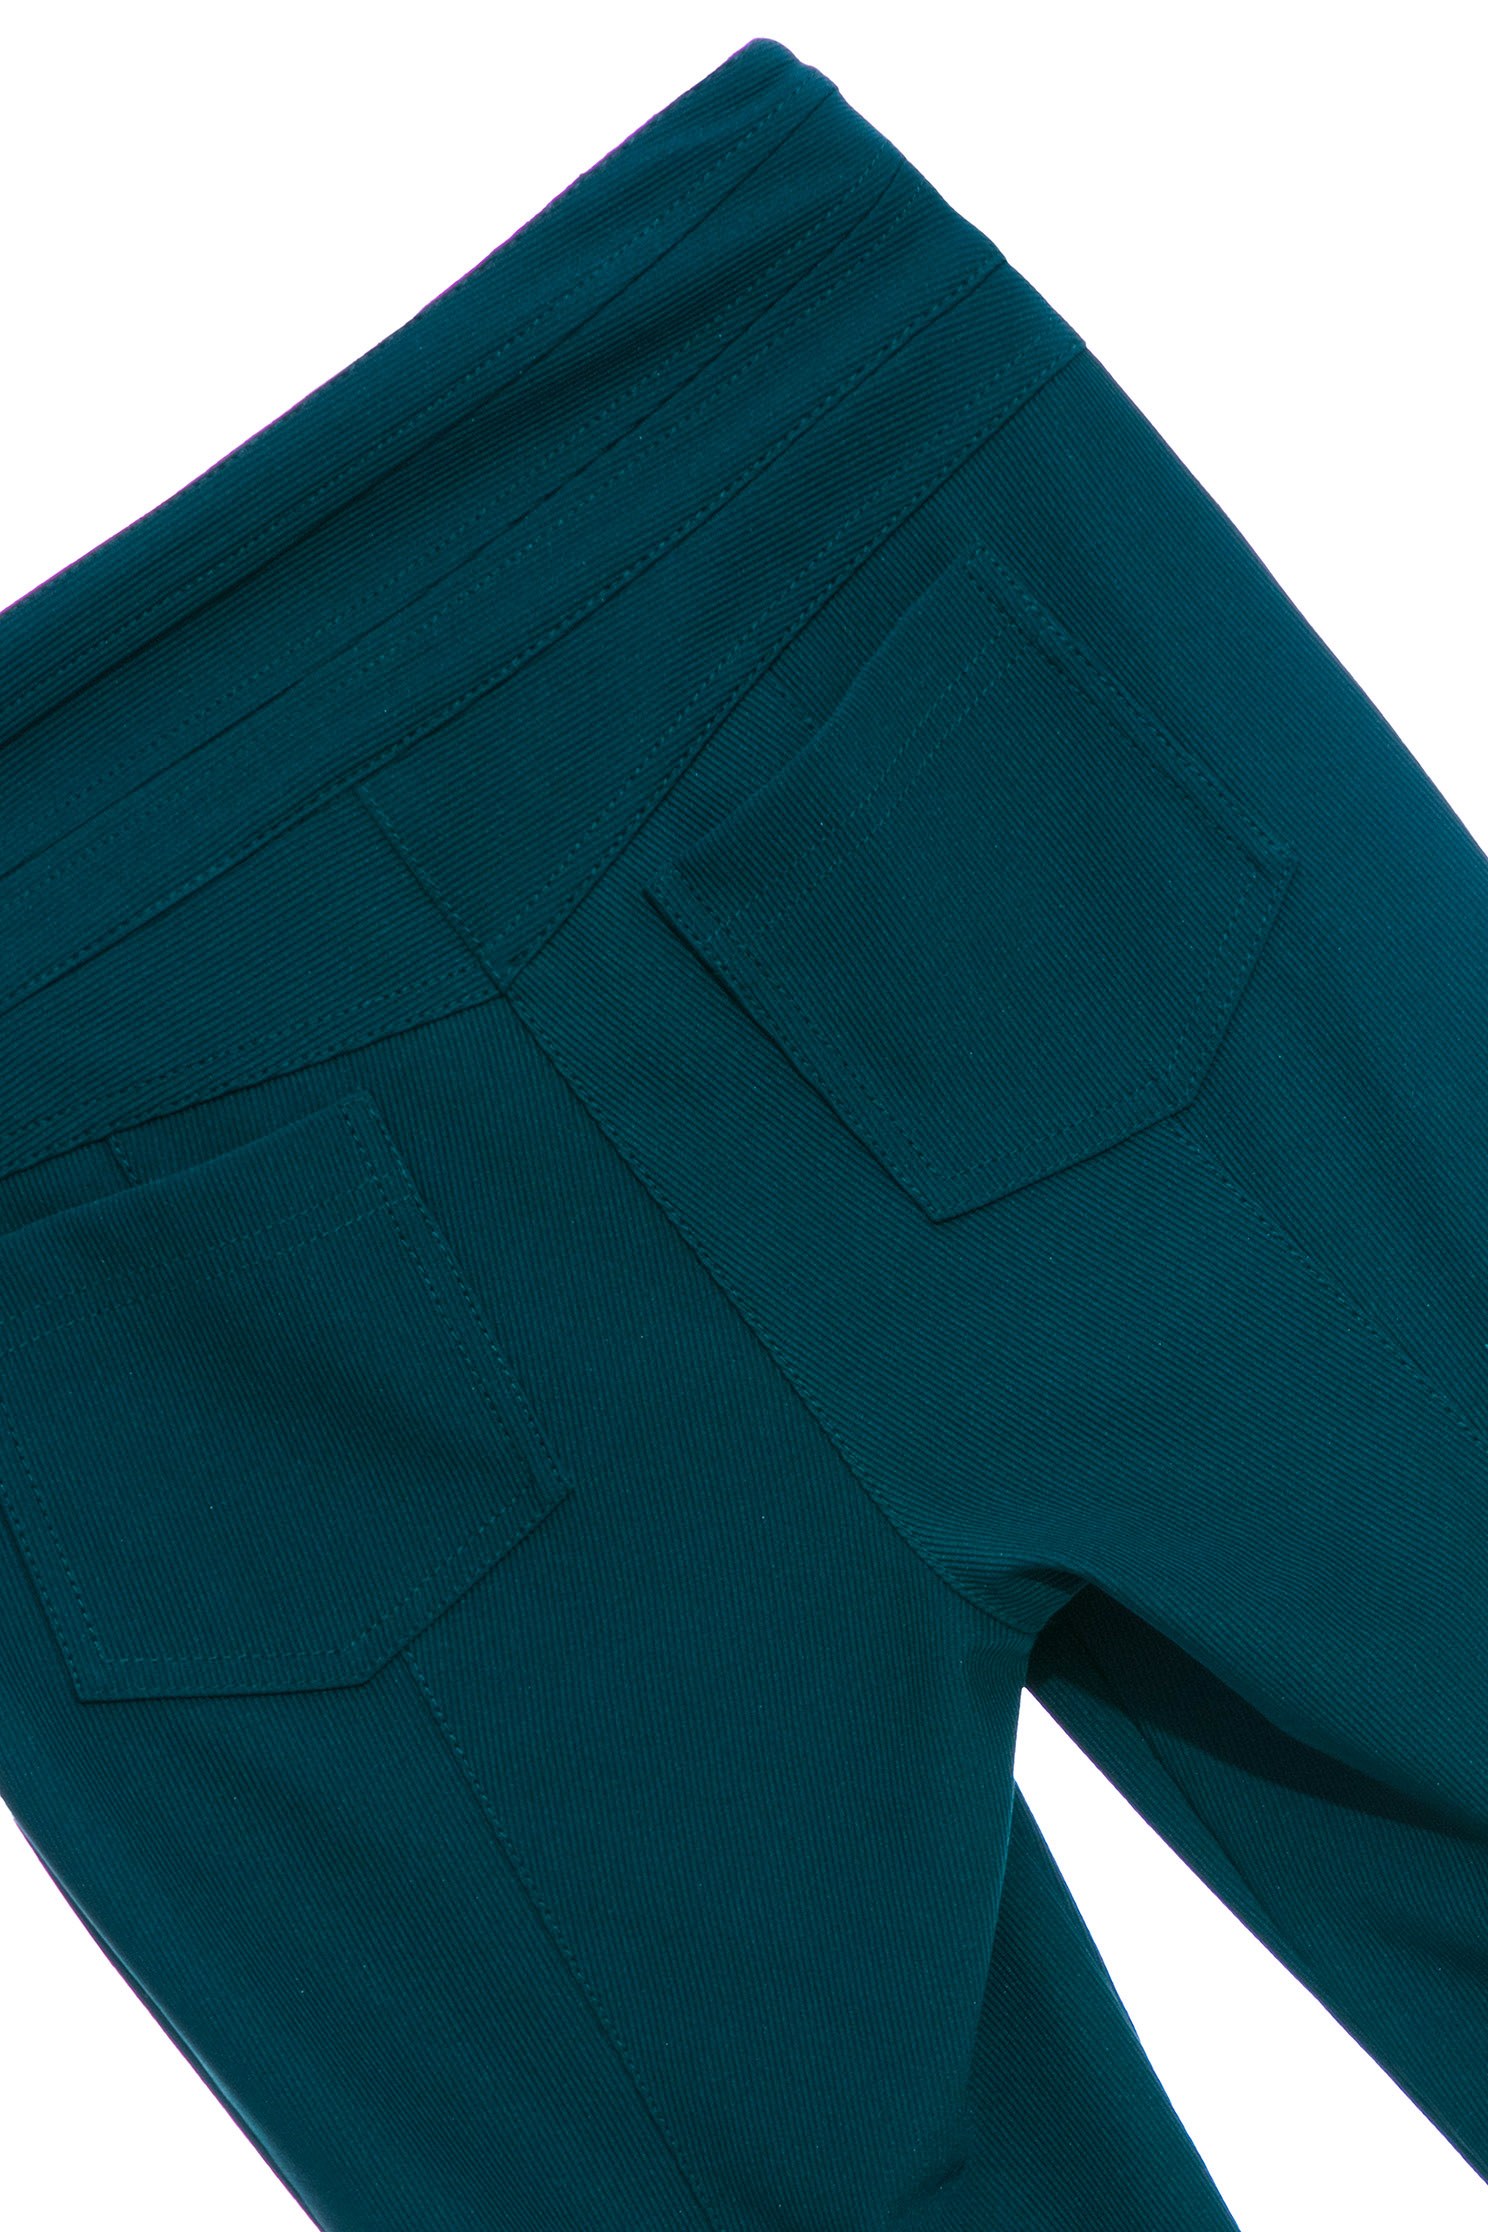 銅綠色喇叭長褲,綠色 長褲,細條紋 綠色,中高腰 綠色銅綠色喇叭長褲,喇叭褲,春夏穿搭,條紋,褲子,西裝褲,長褲